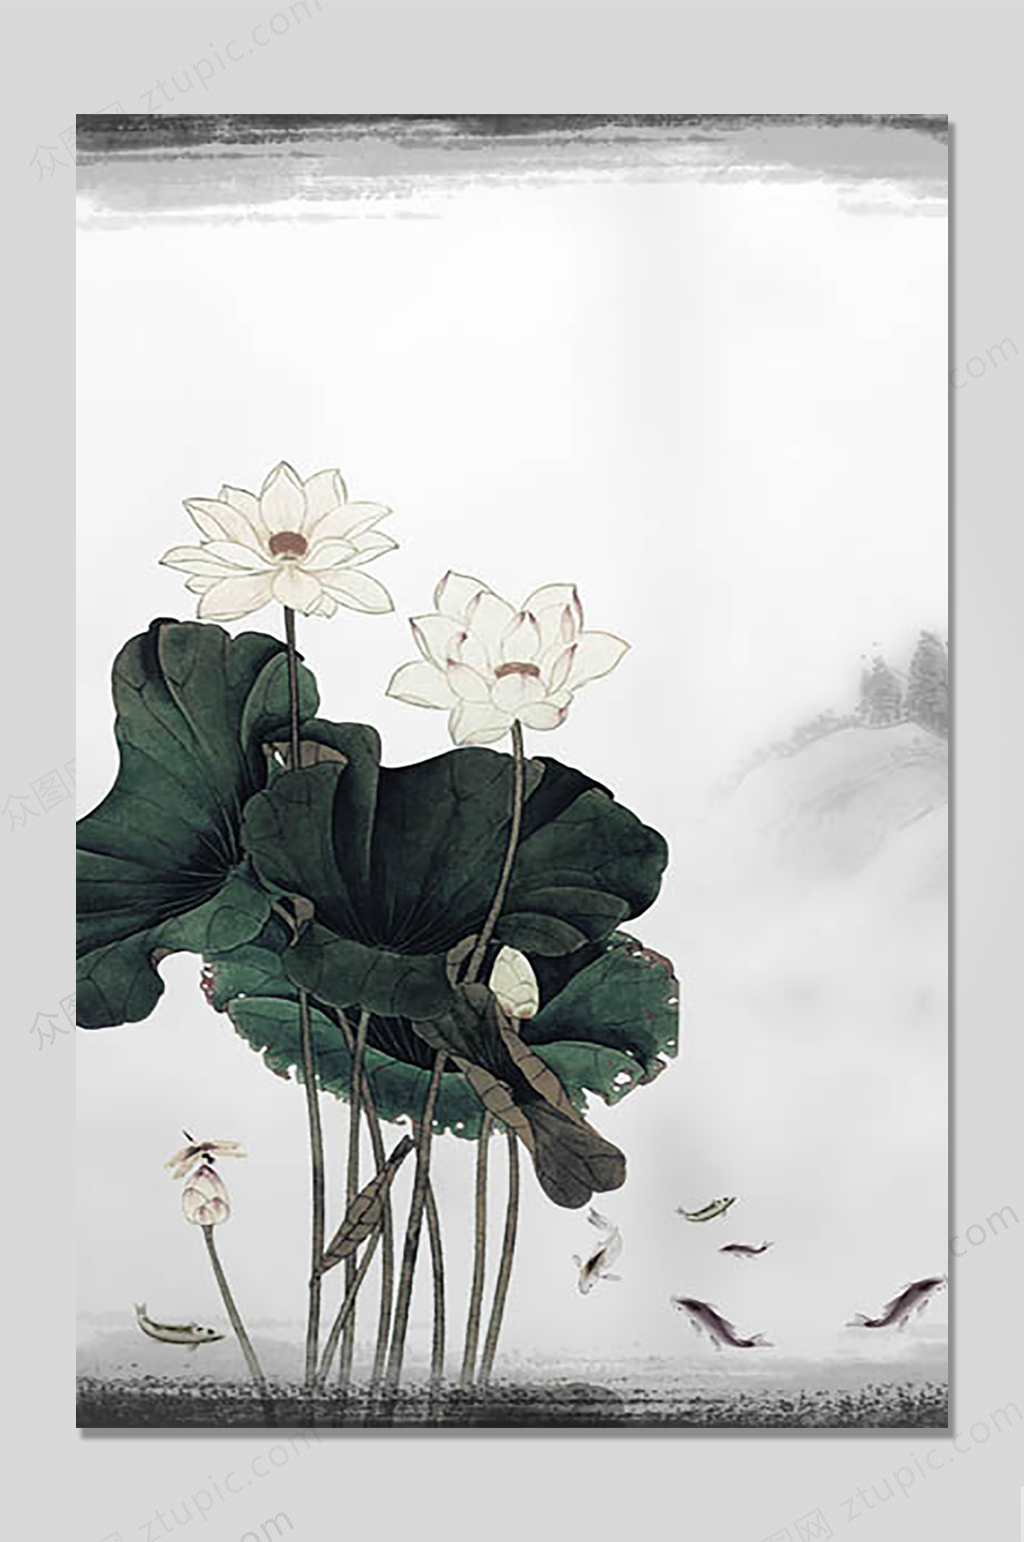 古风海报中国风元素素材免费下载,本作品是由789艺术设计上传的原创免